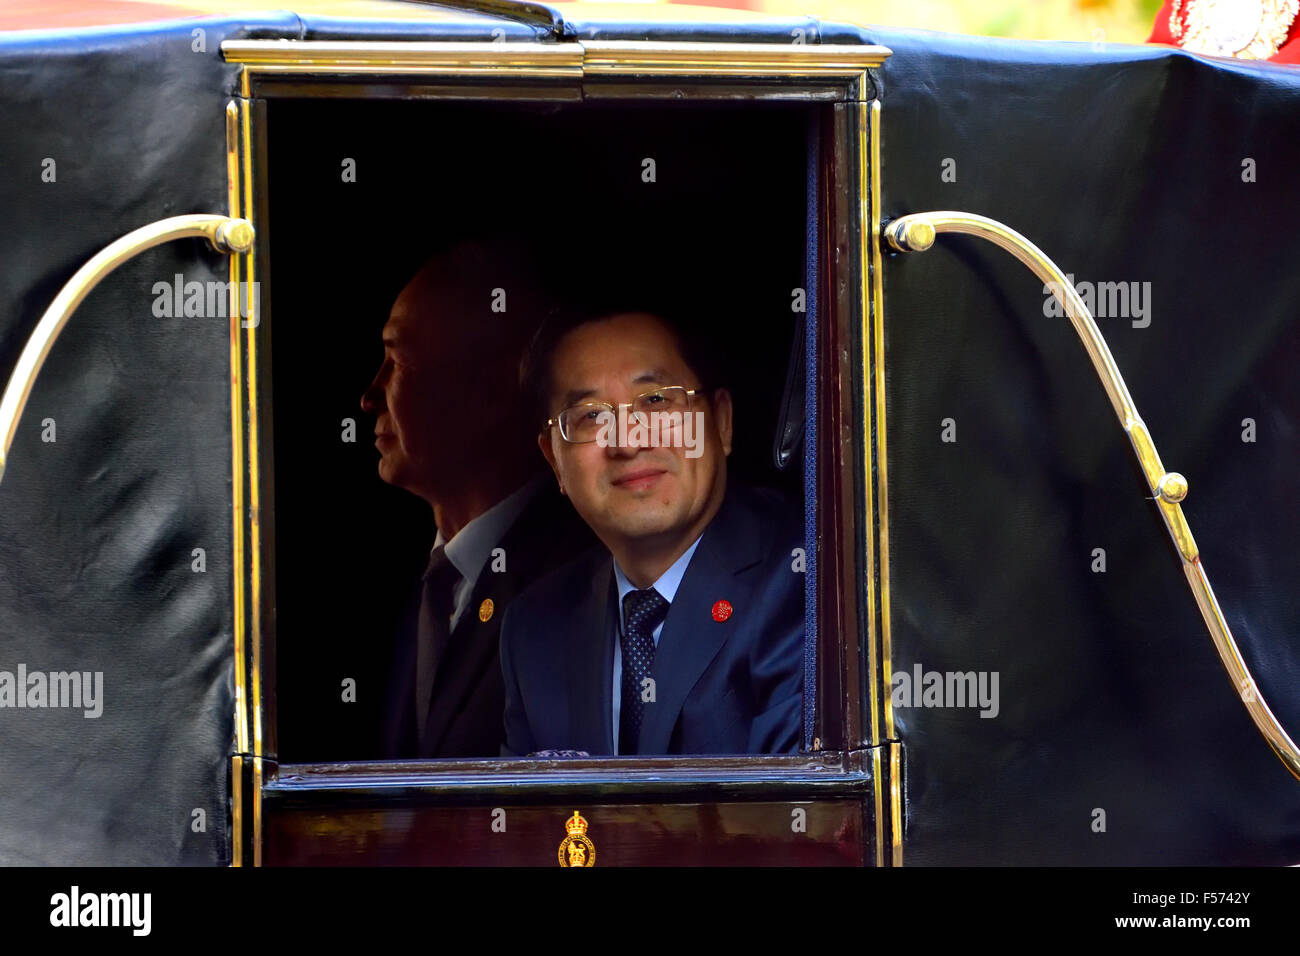 London, 20. Oct. Chinesische Beamte in einer Pferdekutsche in die Mall als chinesischen Staatspräsidenten Xi Jinping beginnt seines London-Besuchs Stockfoto